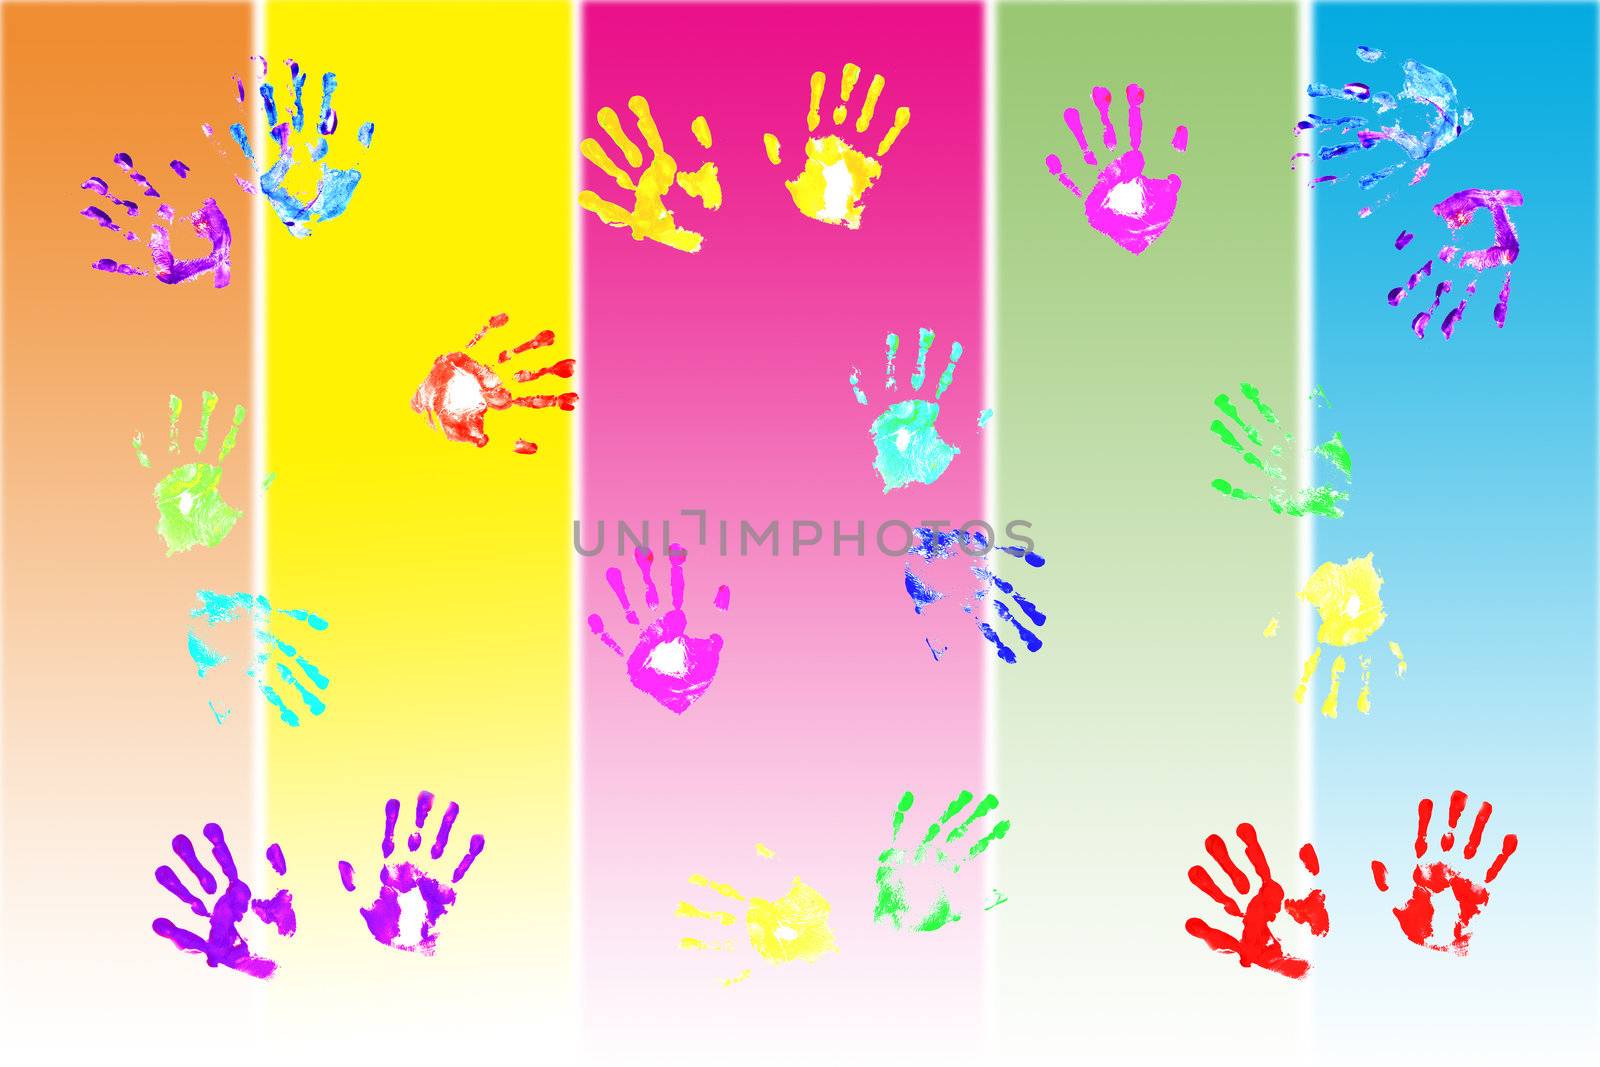 Actual handprints made by children  by jarenwicklund